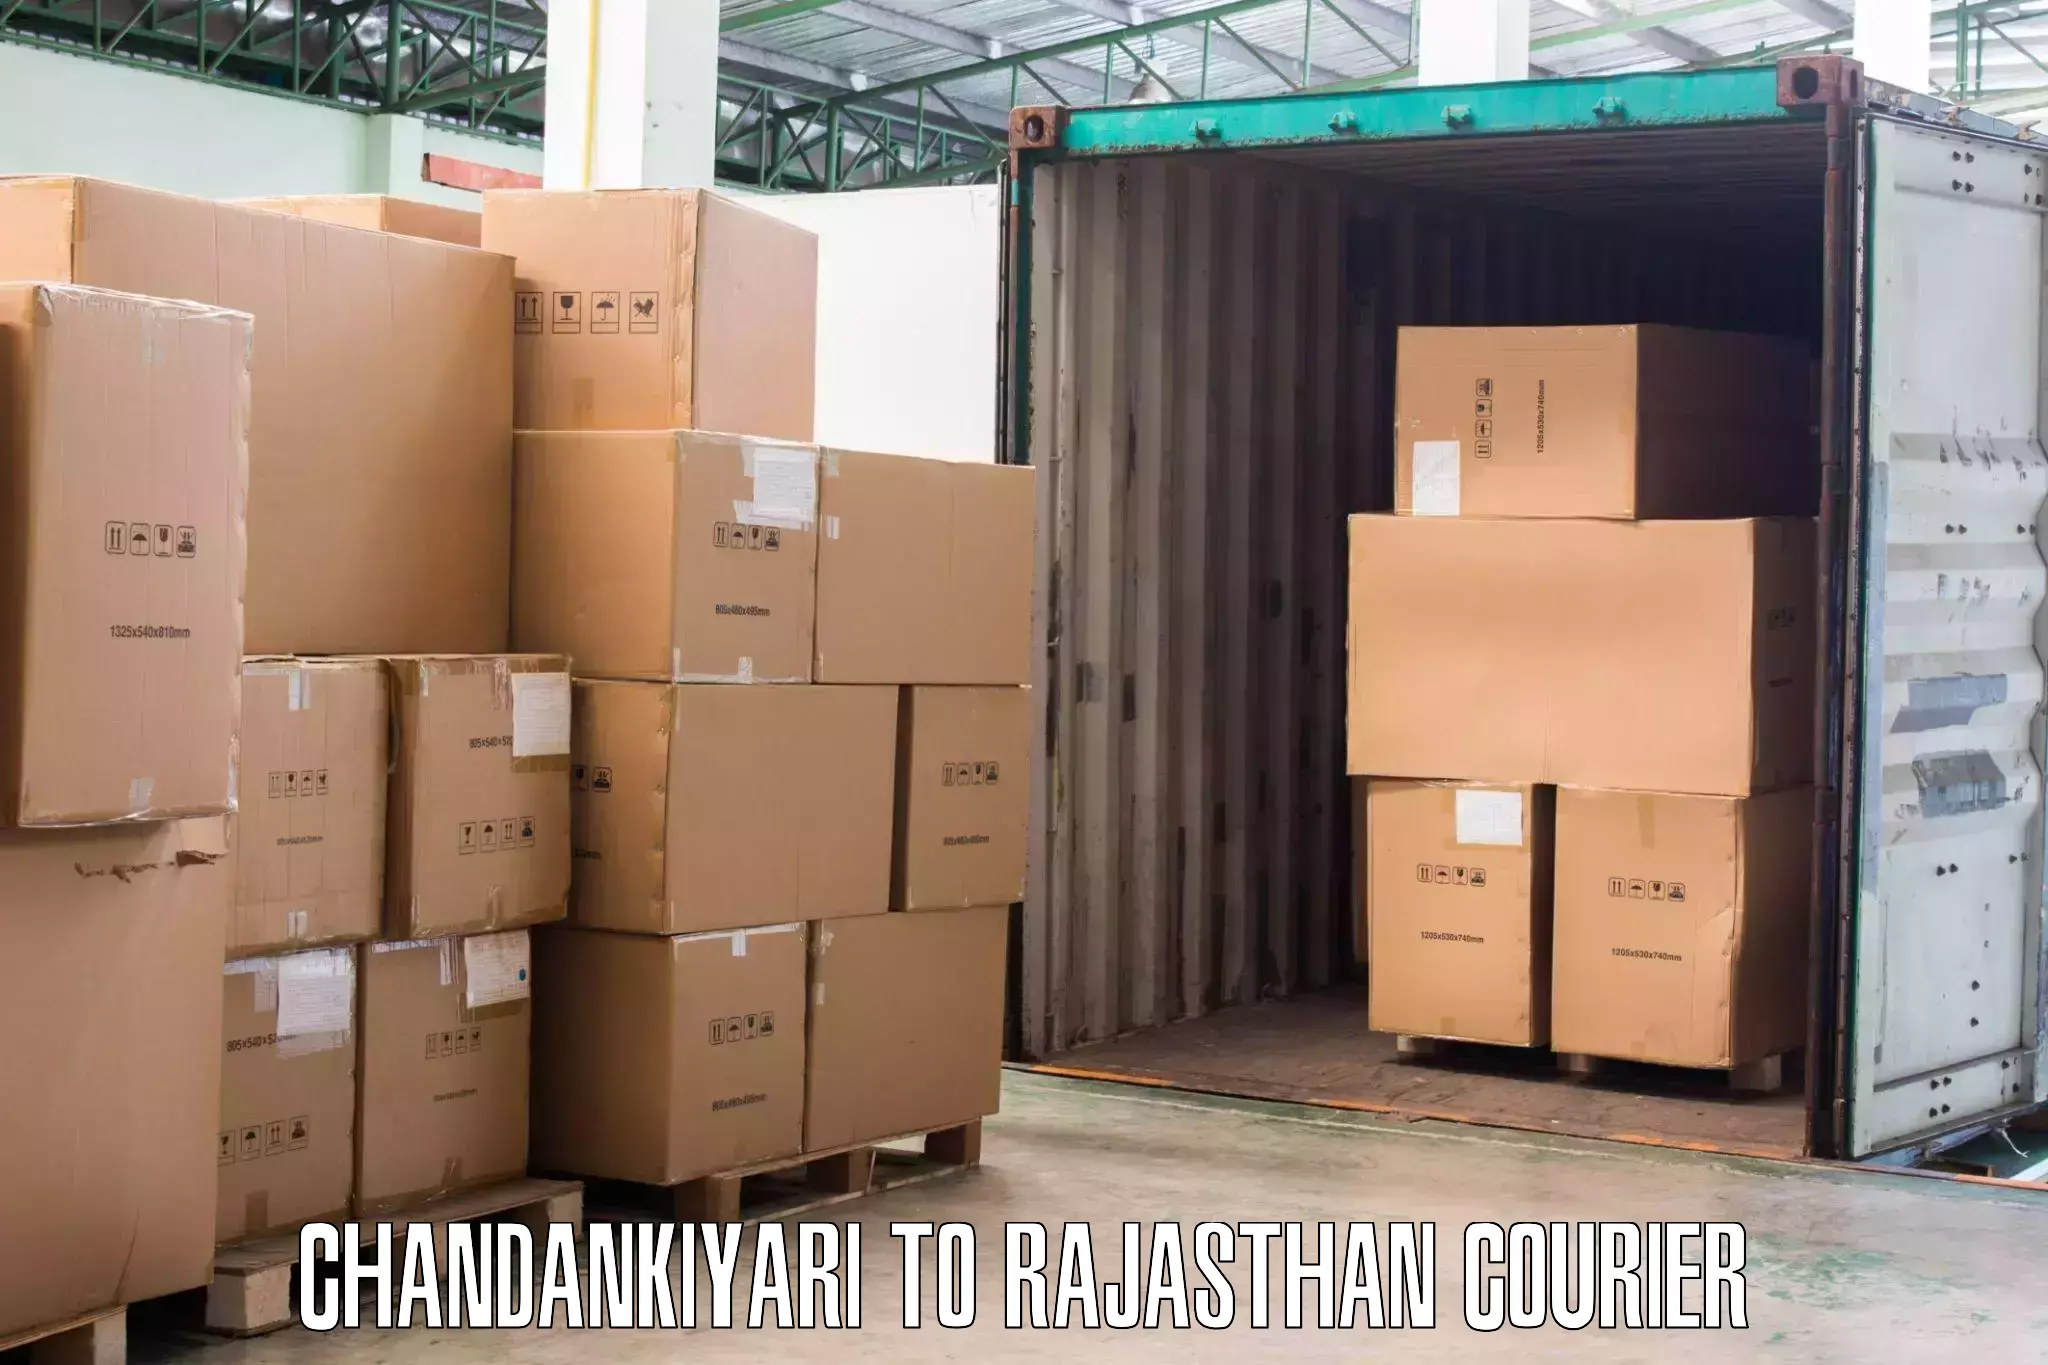 Full-service household moving in Chandankiyari to Pratapgarh Rajasthan